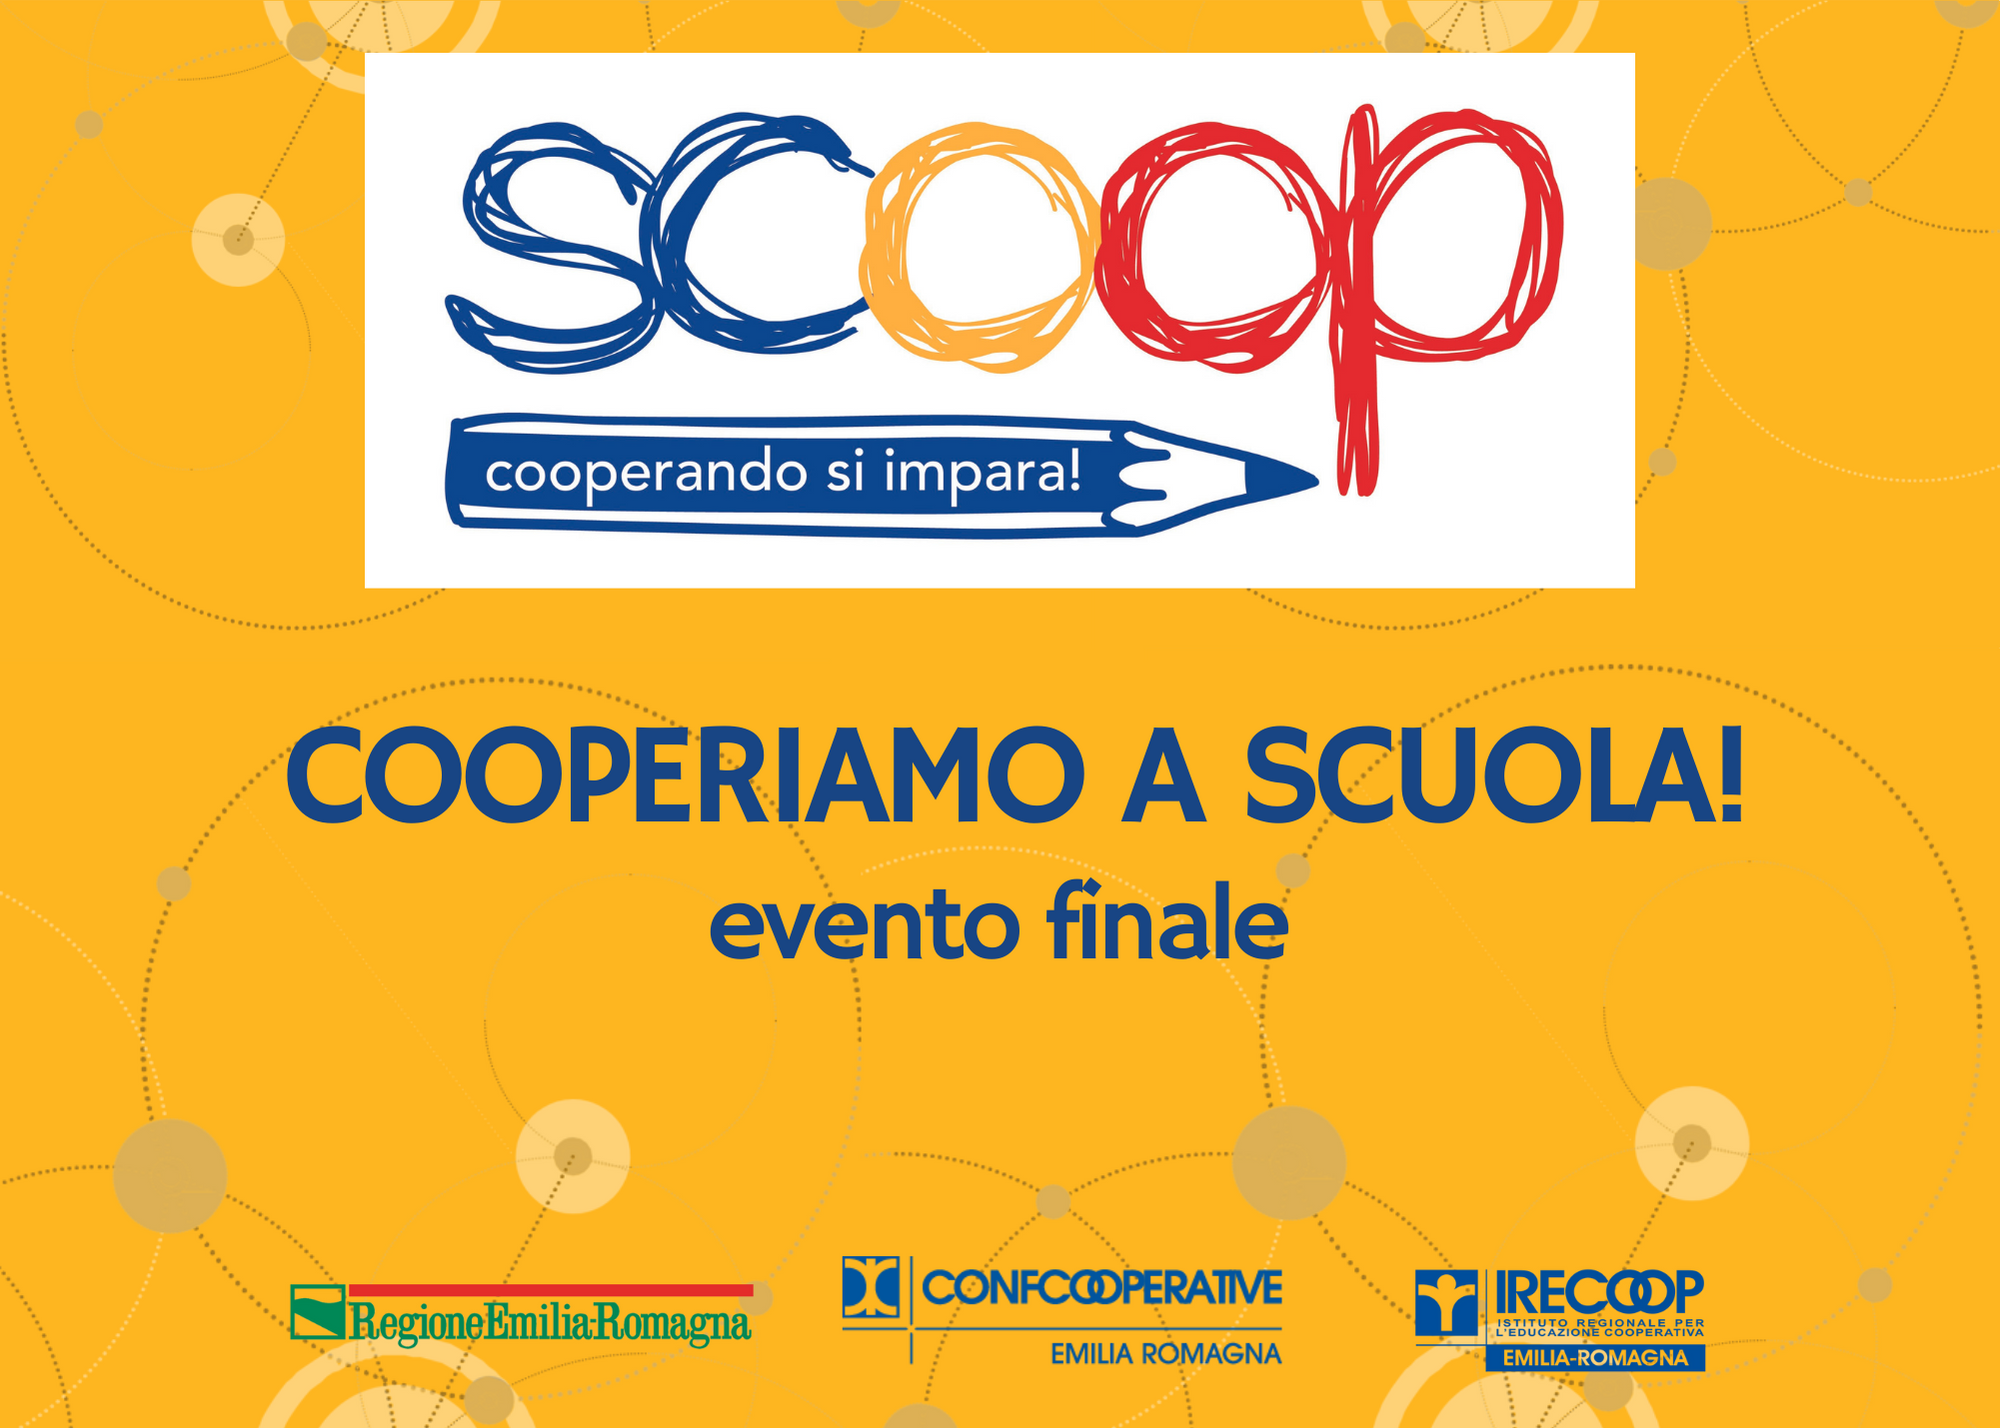 SCOOP – COOPERIAMO A SCUOLA: evento finale